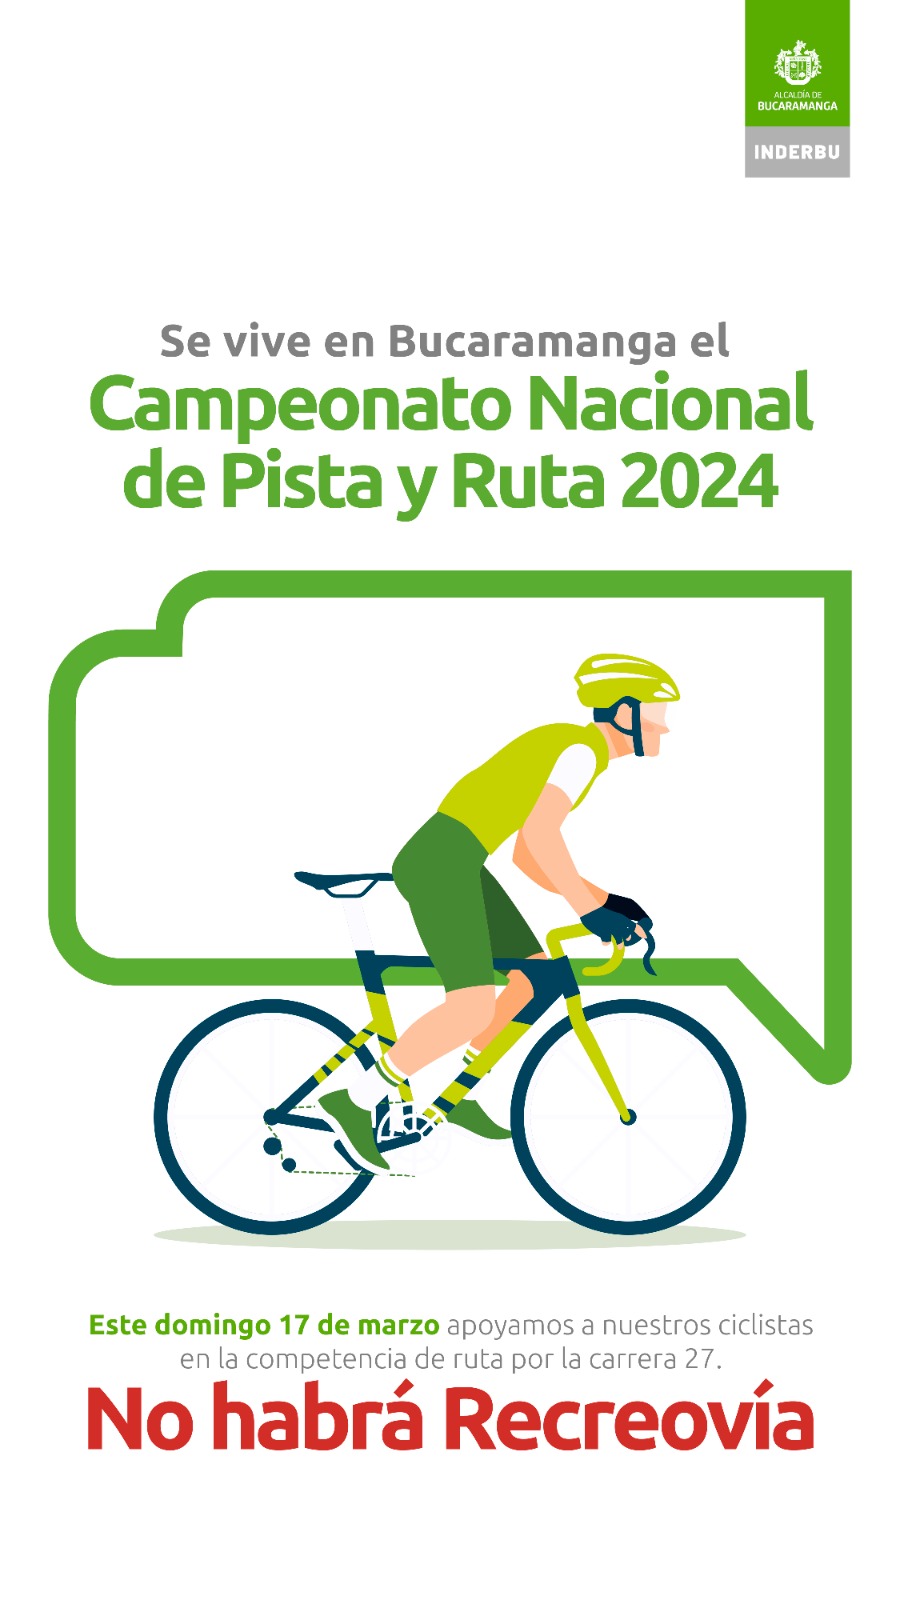 Este domingo 17 de marzo no habrá Recreovía porque se vive en Bucaramanga el Campeonato Nacional de Pista y Ruta